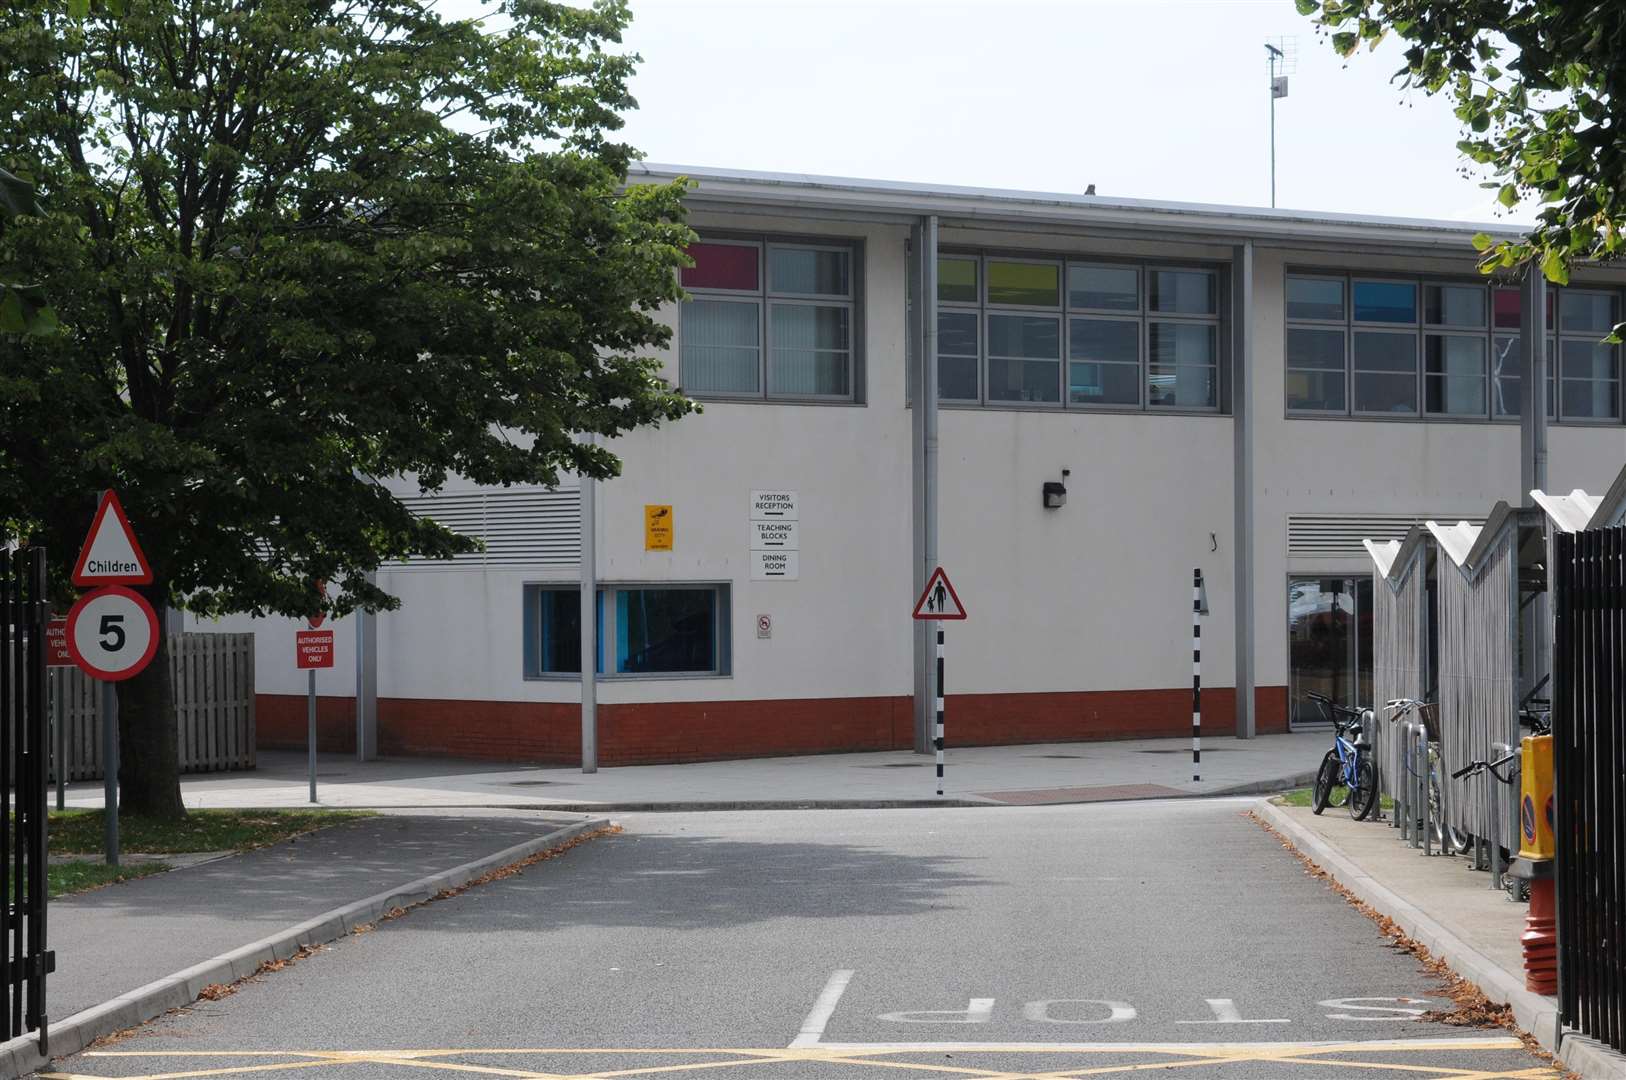 The North School in Essella Road